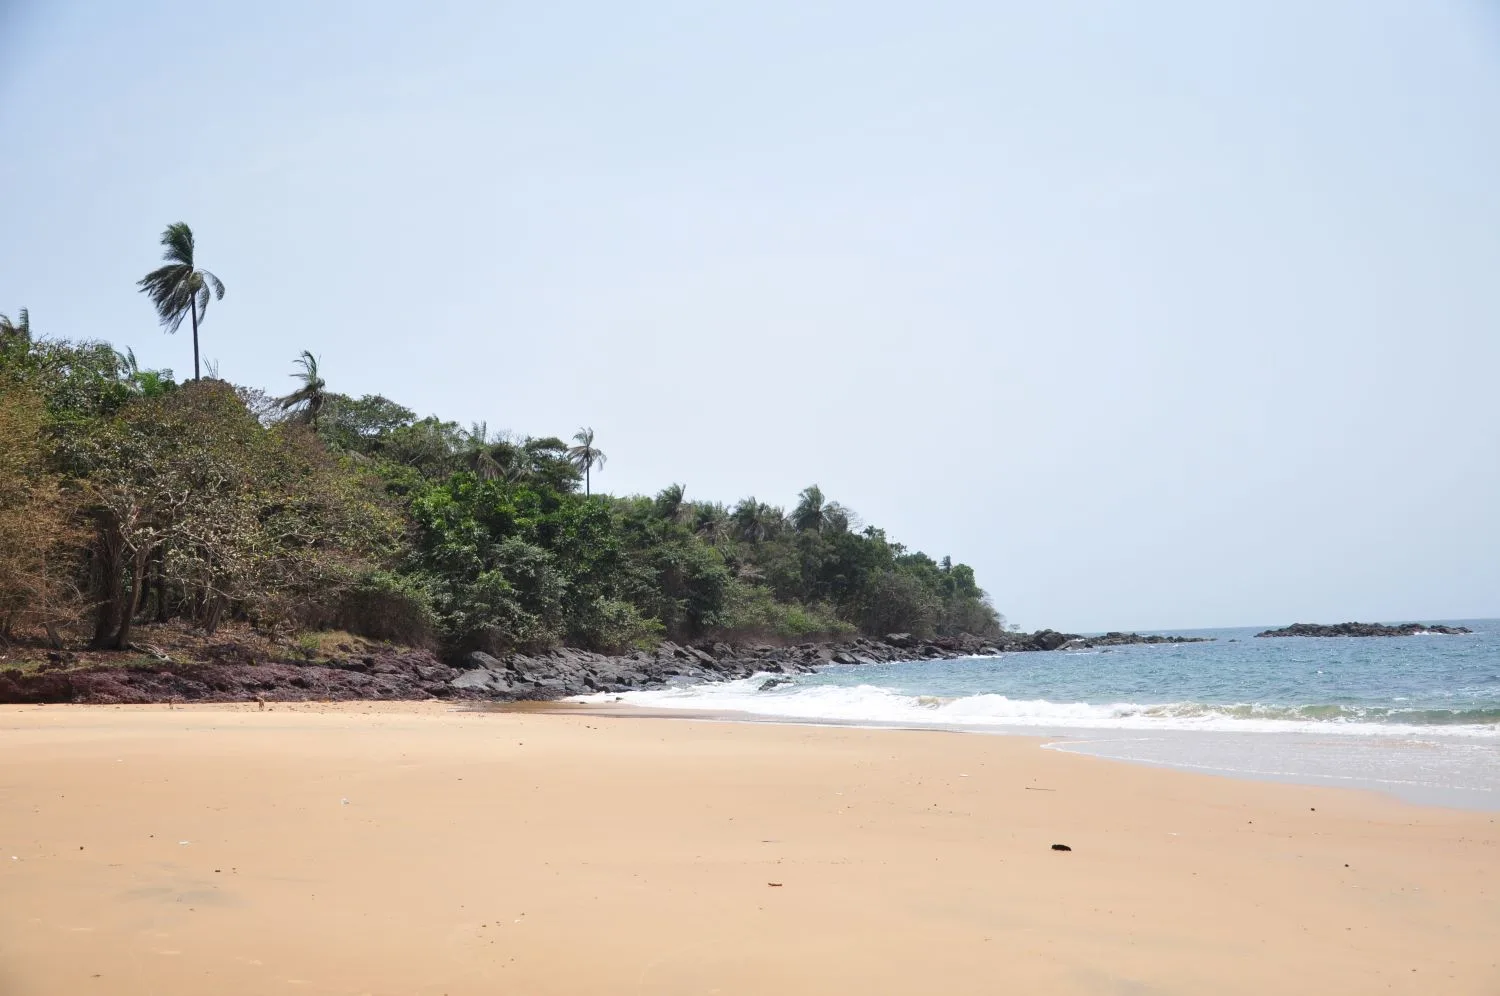 Secluded sandy beach in Sierra Leone